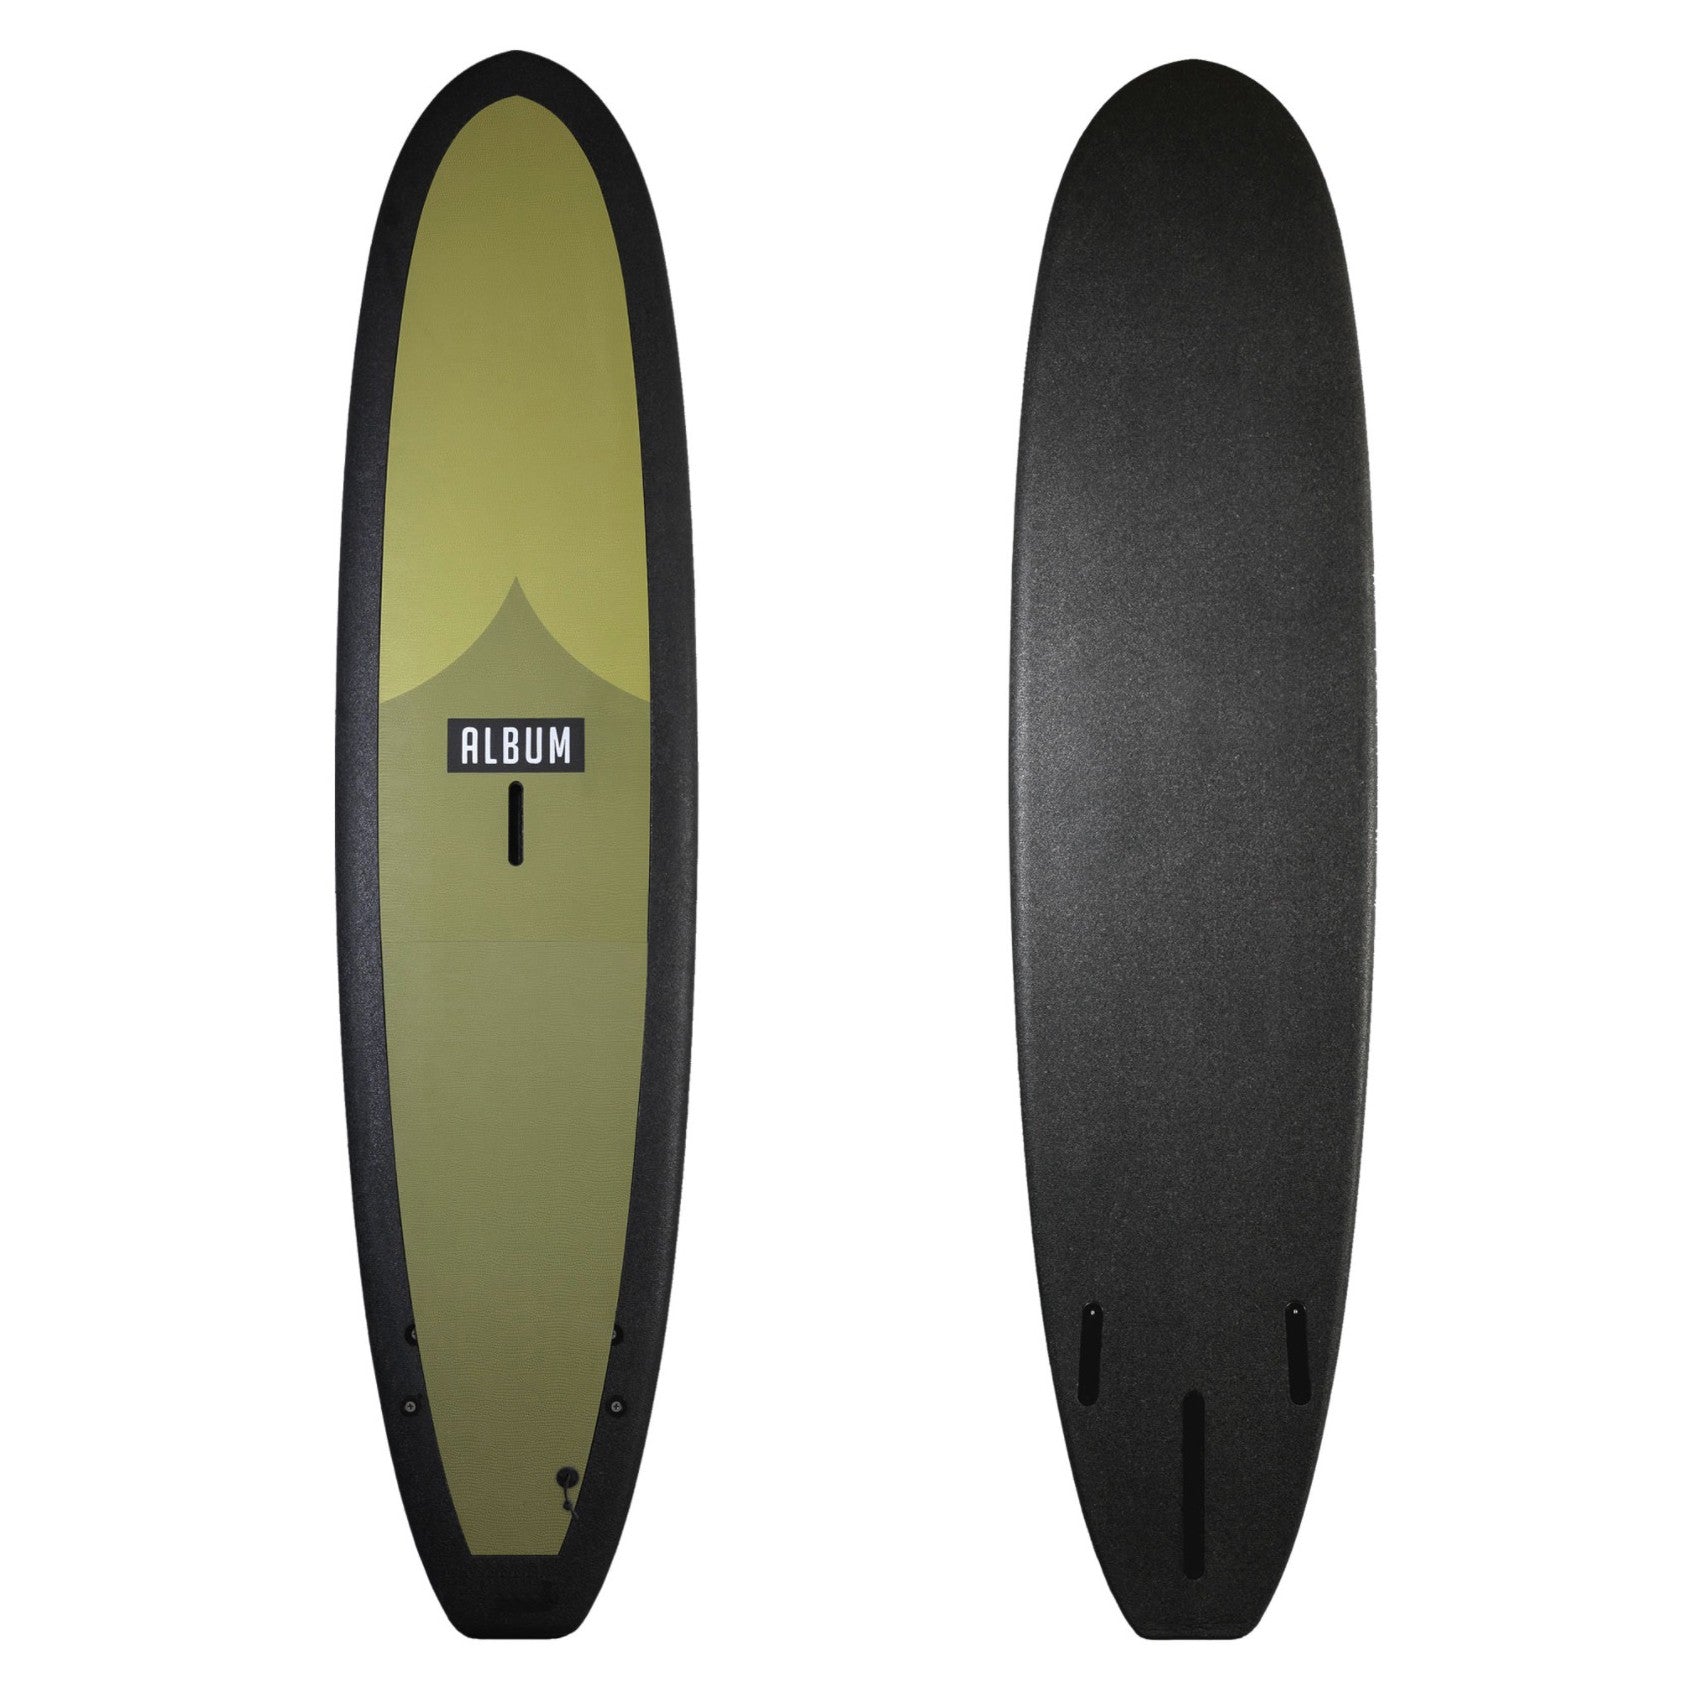 ALBUM Surfboards - Kookalog 7'11 Soft Top - Olive